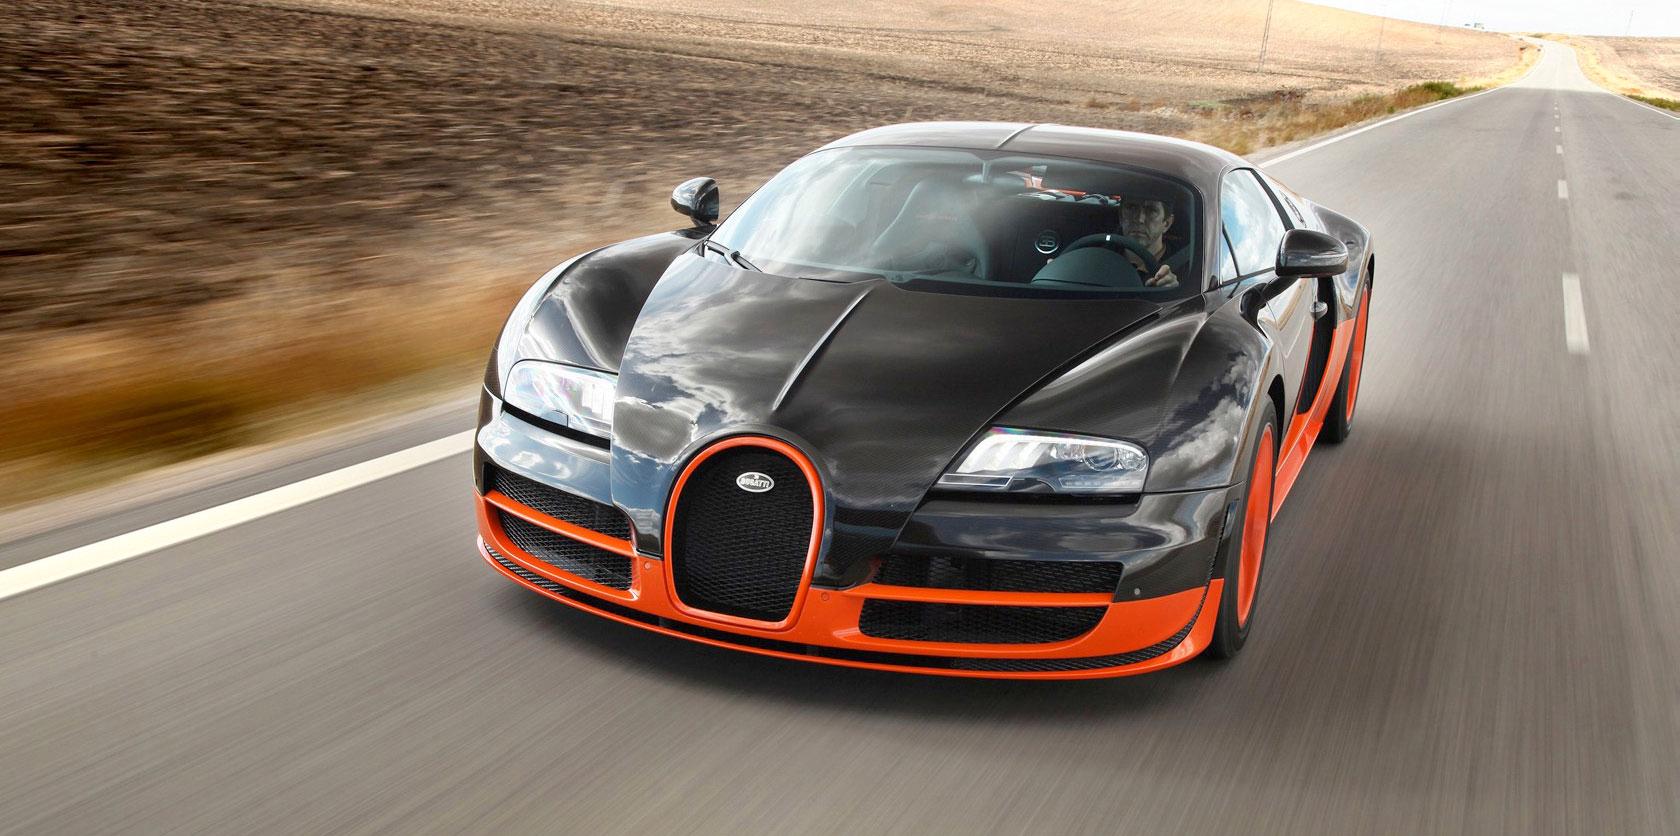 Bugatti Veyron Super Sport Världsrekordhållaren – 431 km/h var genomsnittshastigheten då rekordet sattes framför Guinness-personalen.